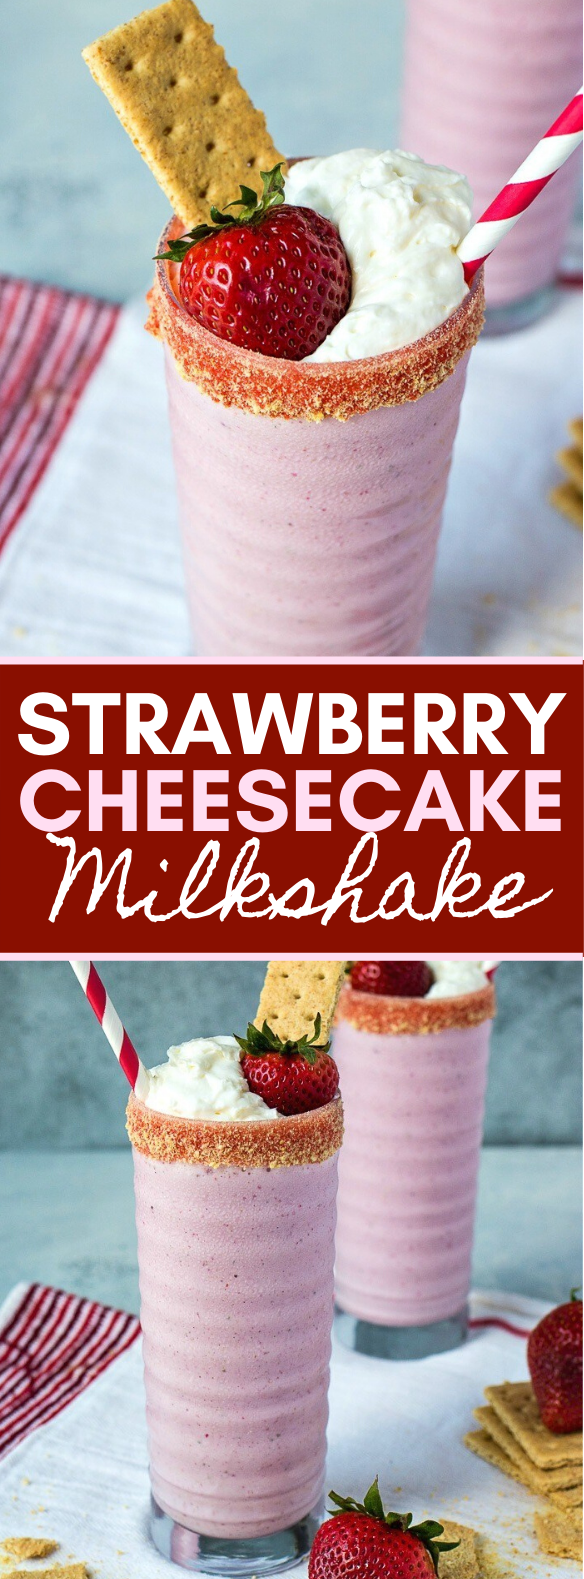  STRAWBERRY CHEESECAKE MILKSHAKE #drinks #desserts